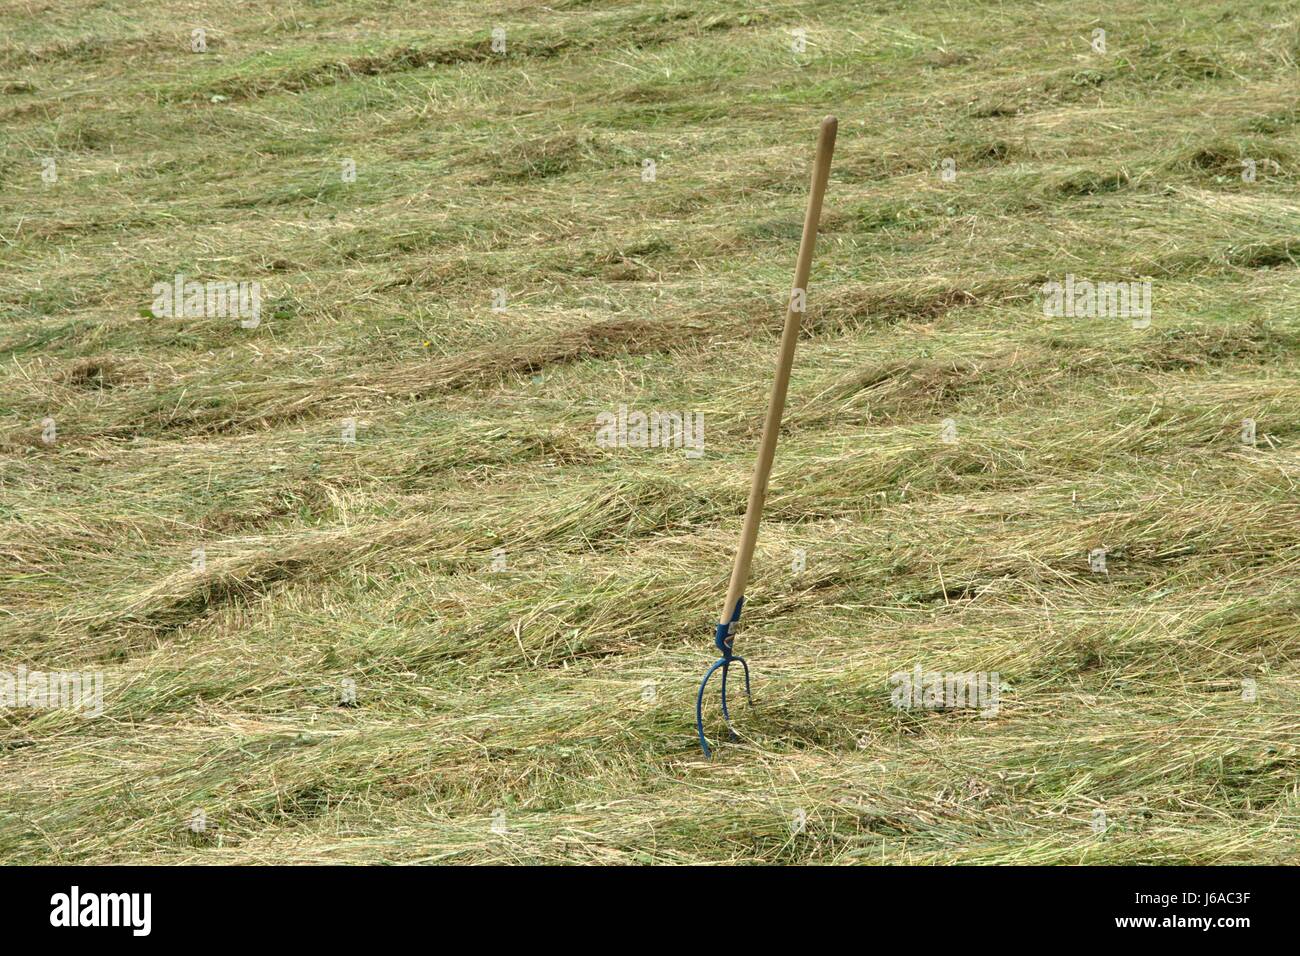 Tablier hay meadow pelouse fourrages verts Agriculture agriculture montagnes grange à foin Banque D'Images